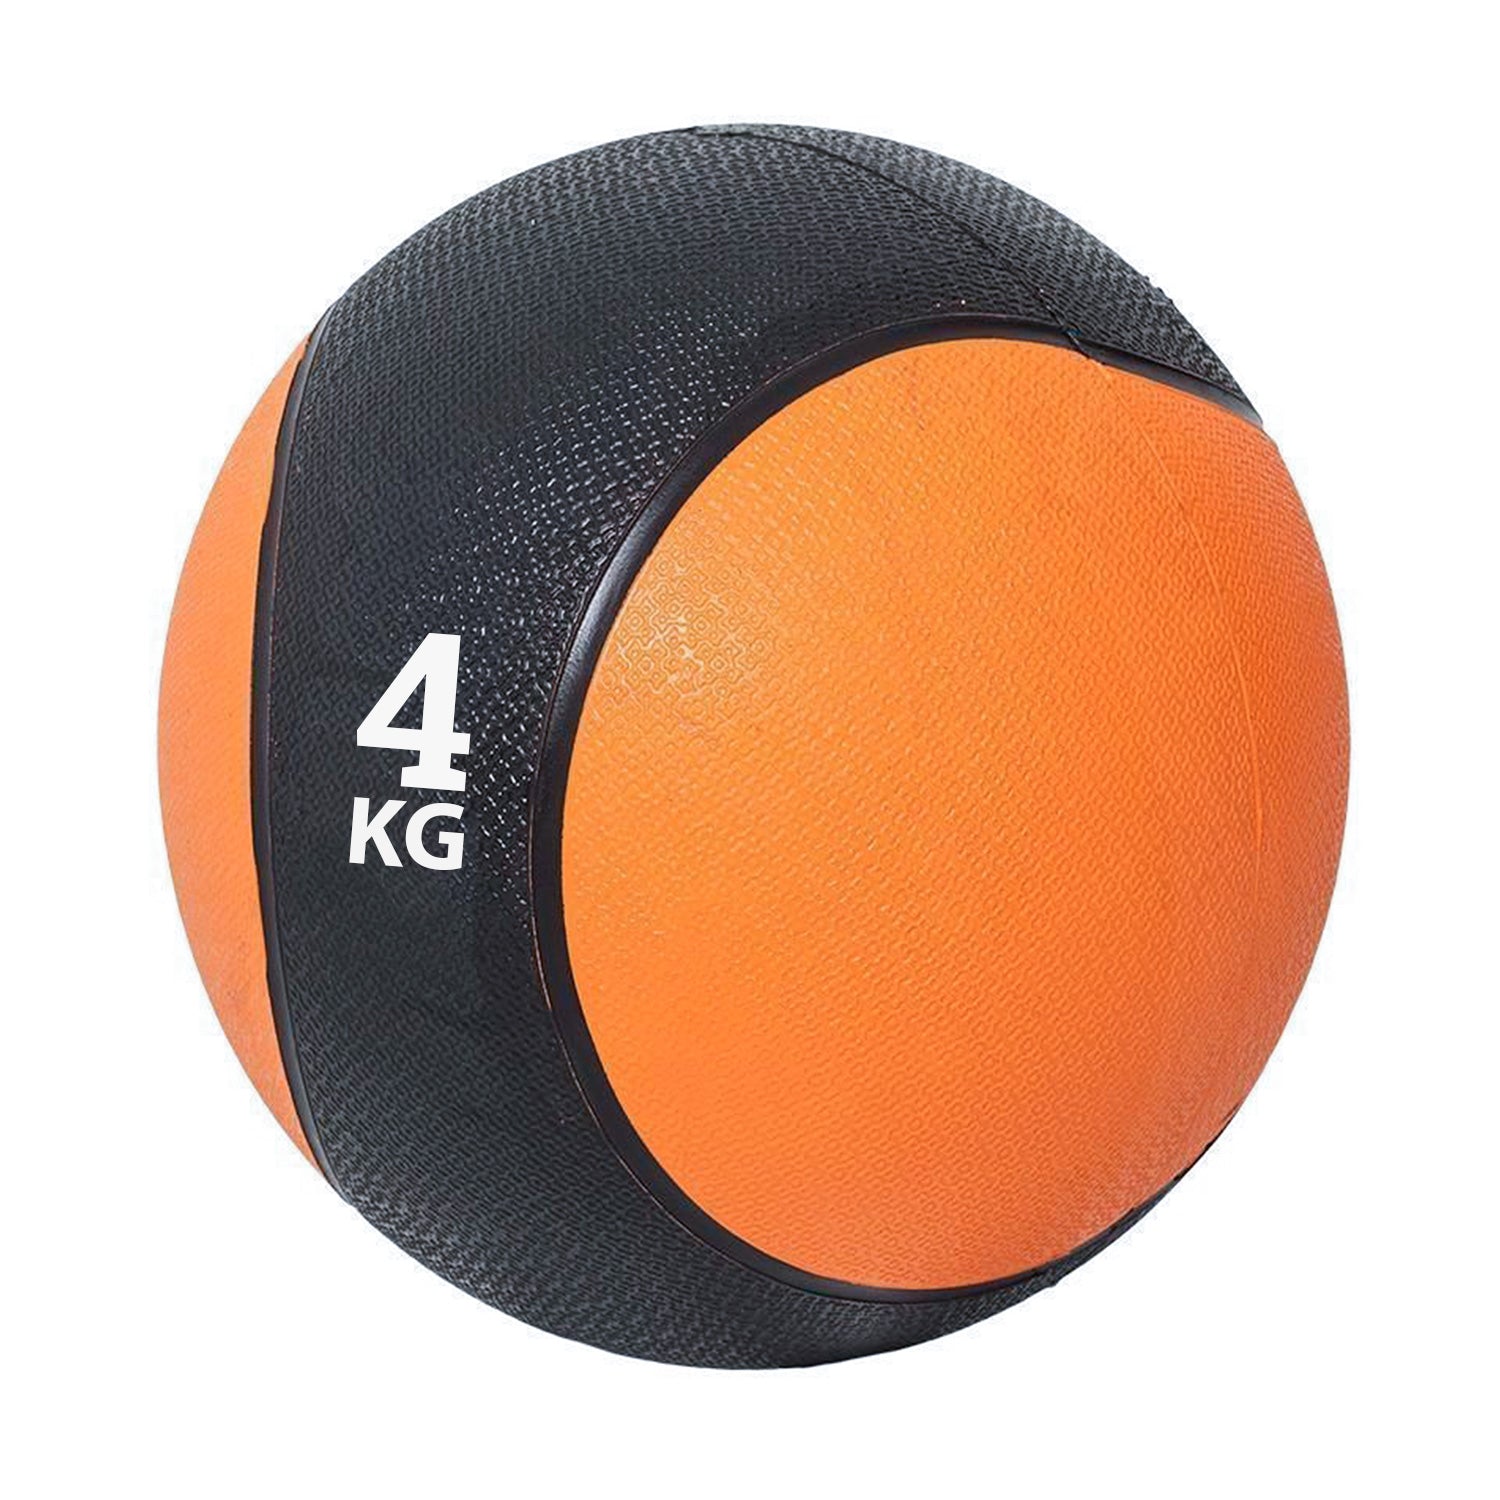 كرة طبية من المطاط لاعادة التأهيل و اللياقة البدنية - لون اسود و برتقالي - وزن 4 كيلو جرام - Kanteen - كانتين